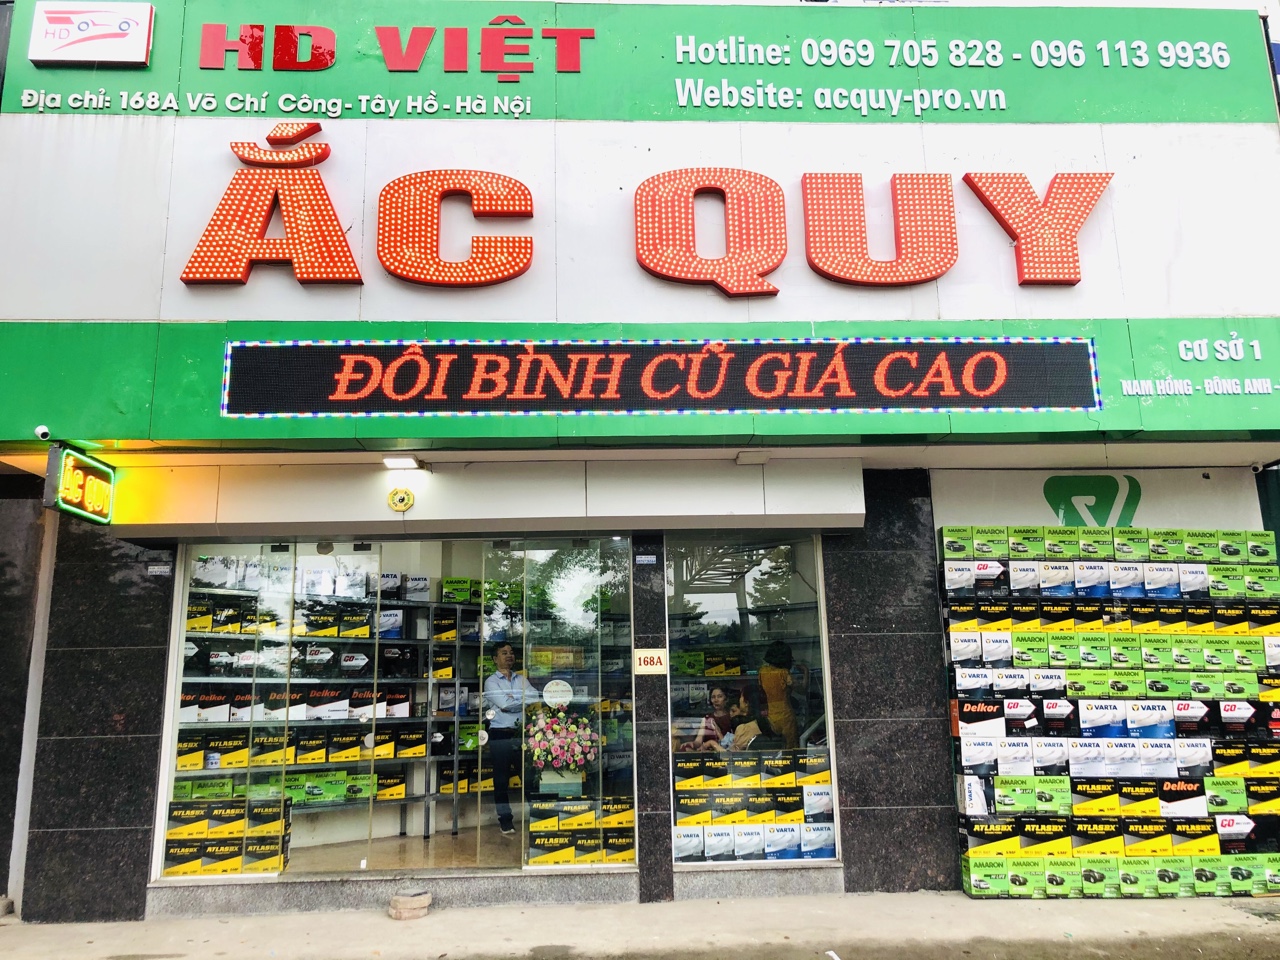 HD Việt - Thay Ắc quy, câu bình ắc quy tận nơi lạc long quân, tây hồ, hà nội